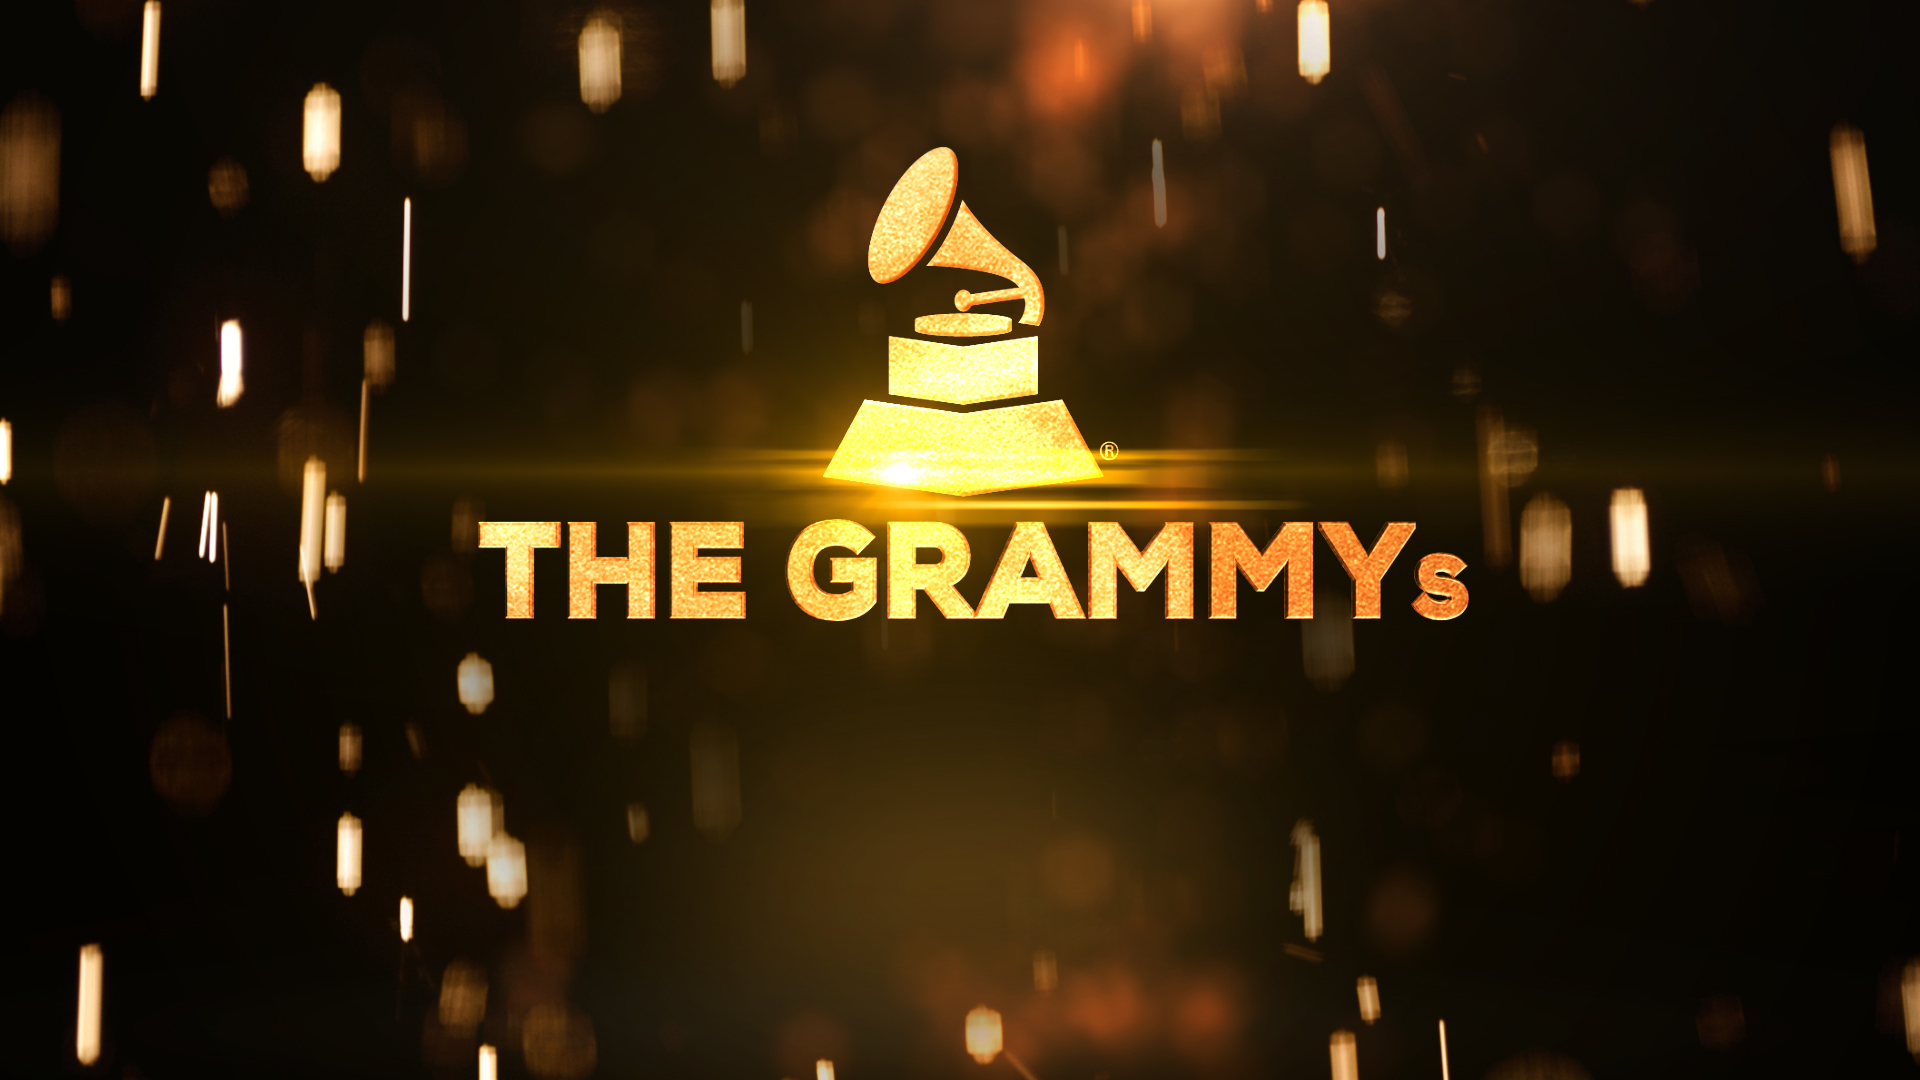 Presentaciones musicales y premios en los Grammy's